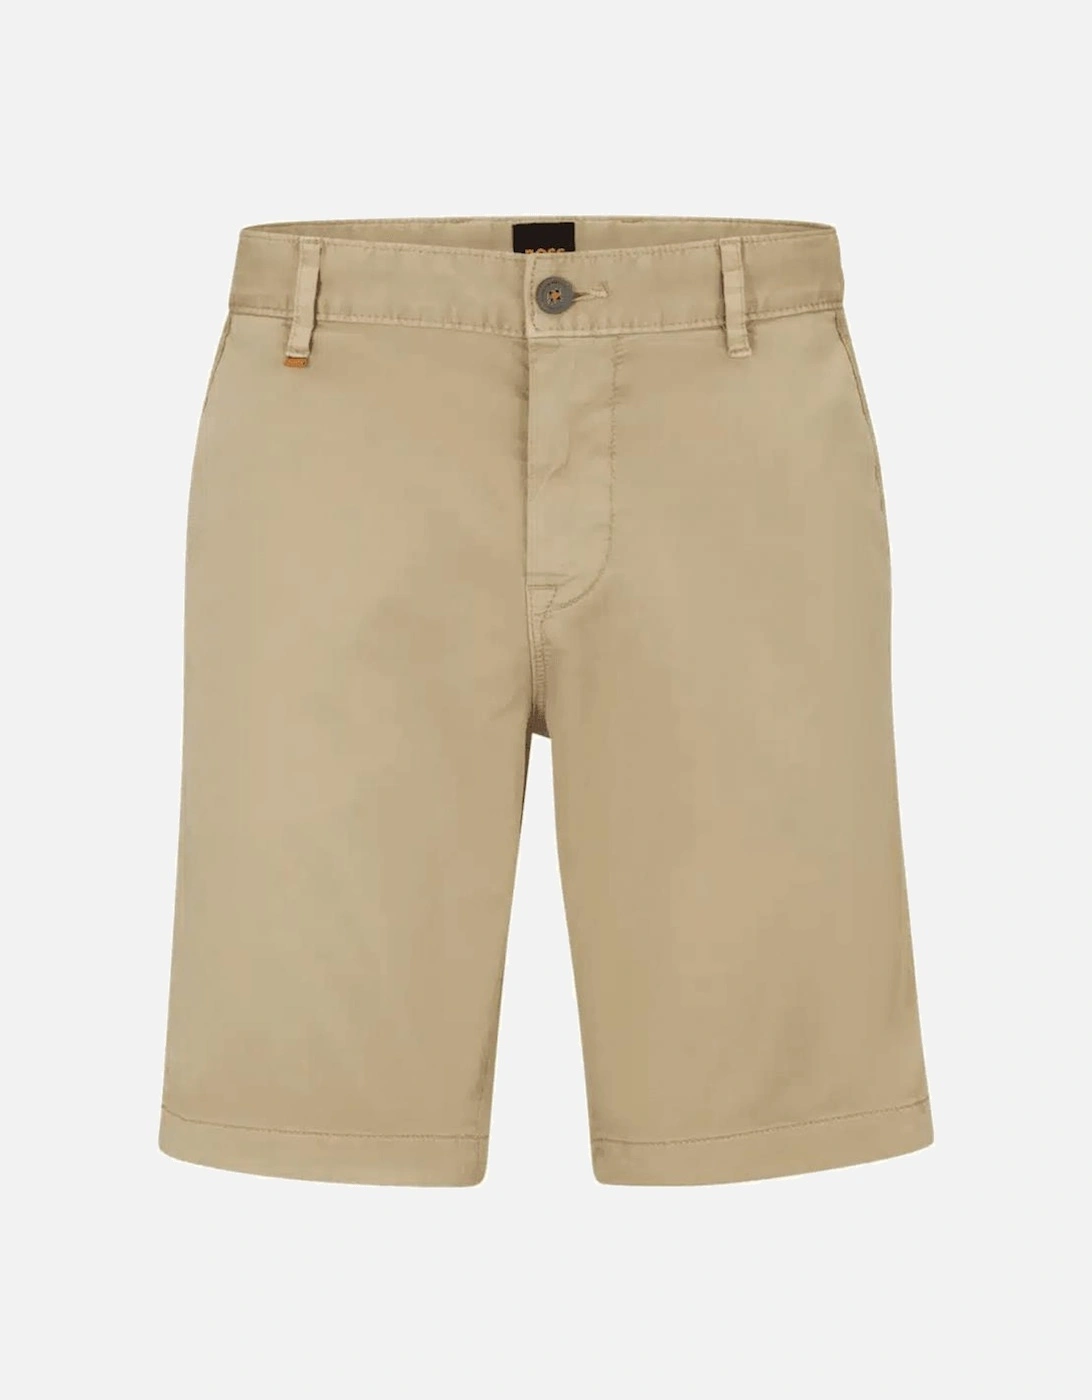 Schino Slim Cotton Beige Chino Shorts, 4 of 3